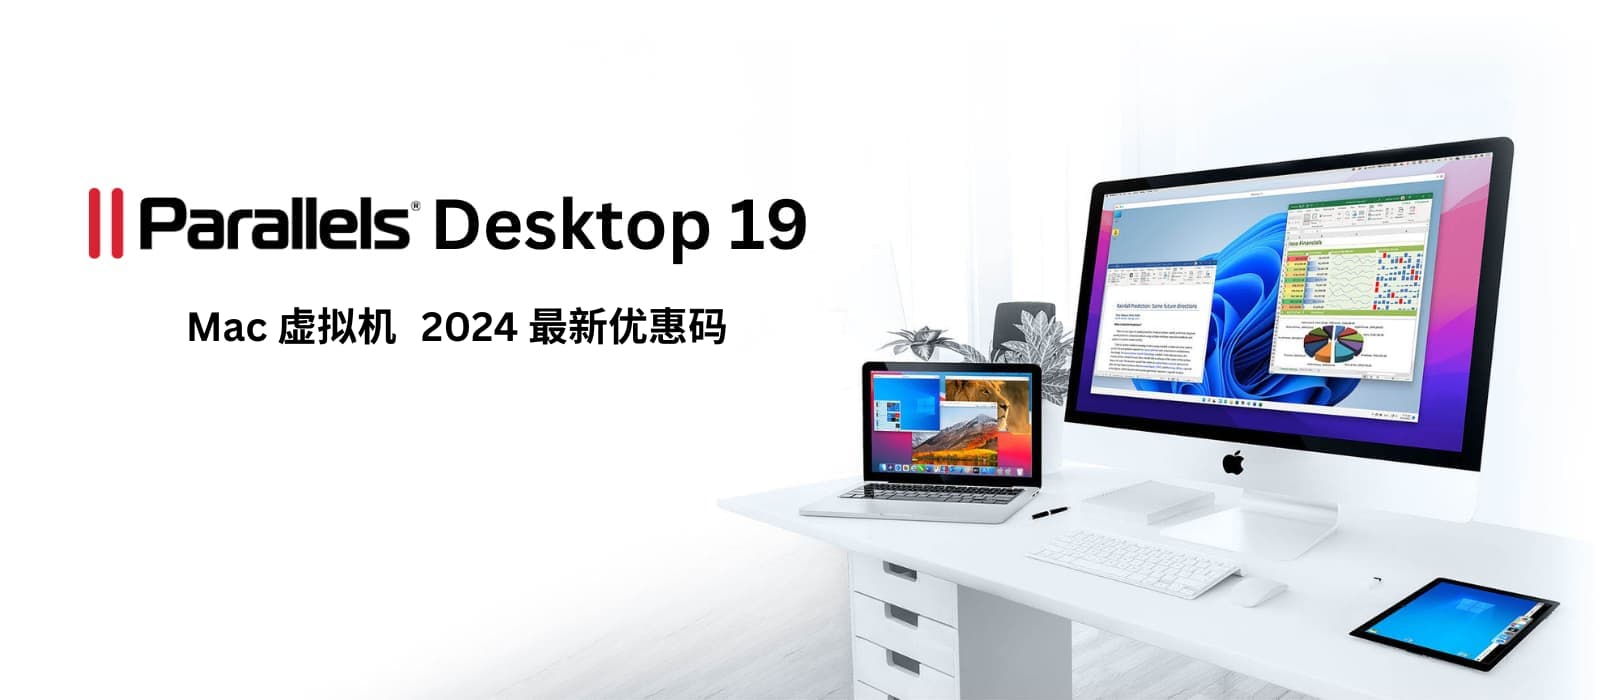 Parallels Desktop 19 - macOS 虚拟机工具，2024春季 8 折限时优惠[截止2024年5月1日] 15